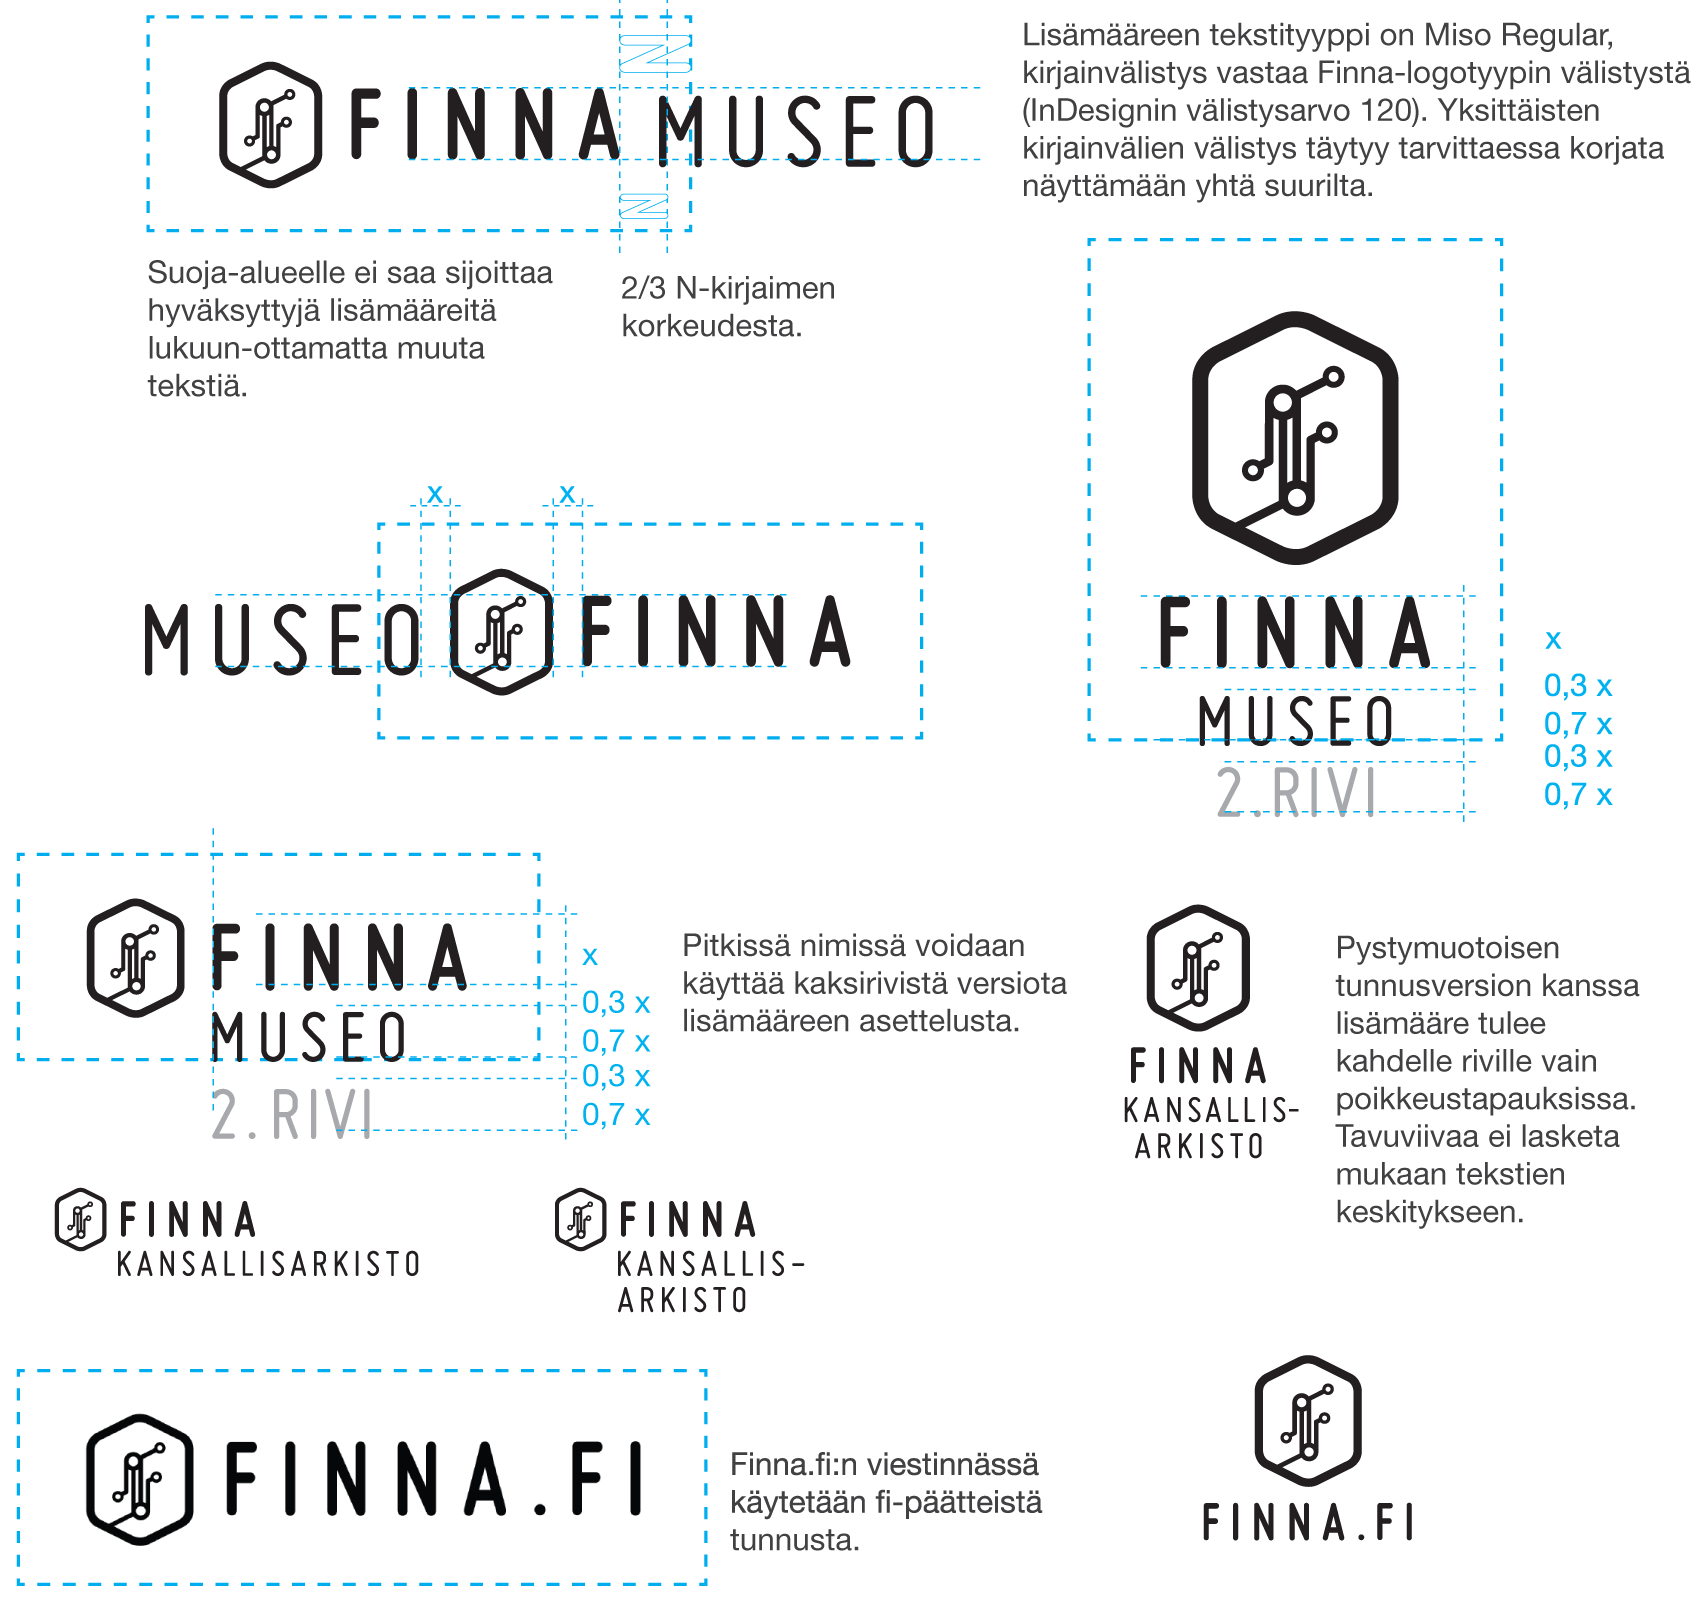 Esimerkkejä Finna-tunnuksen lisämääreen sijoittelusta tunnuksen yhteyteen sekä Finna.fi-tunnus.